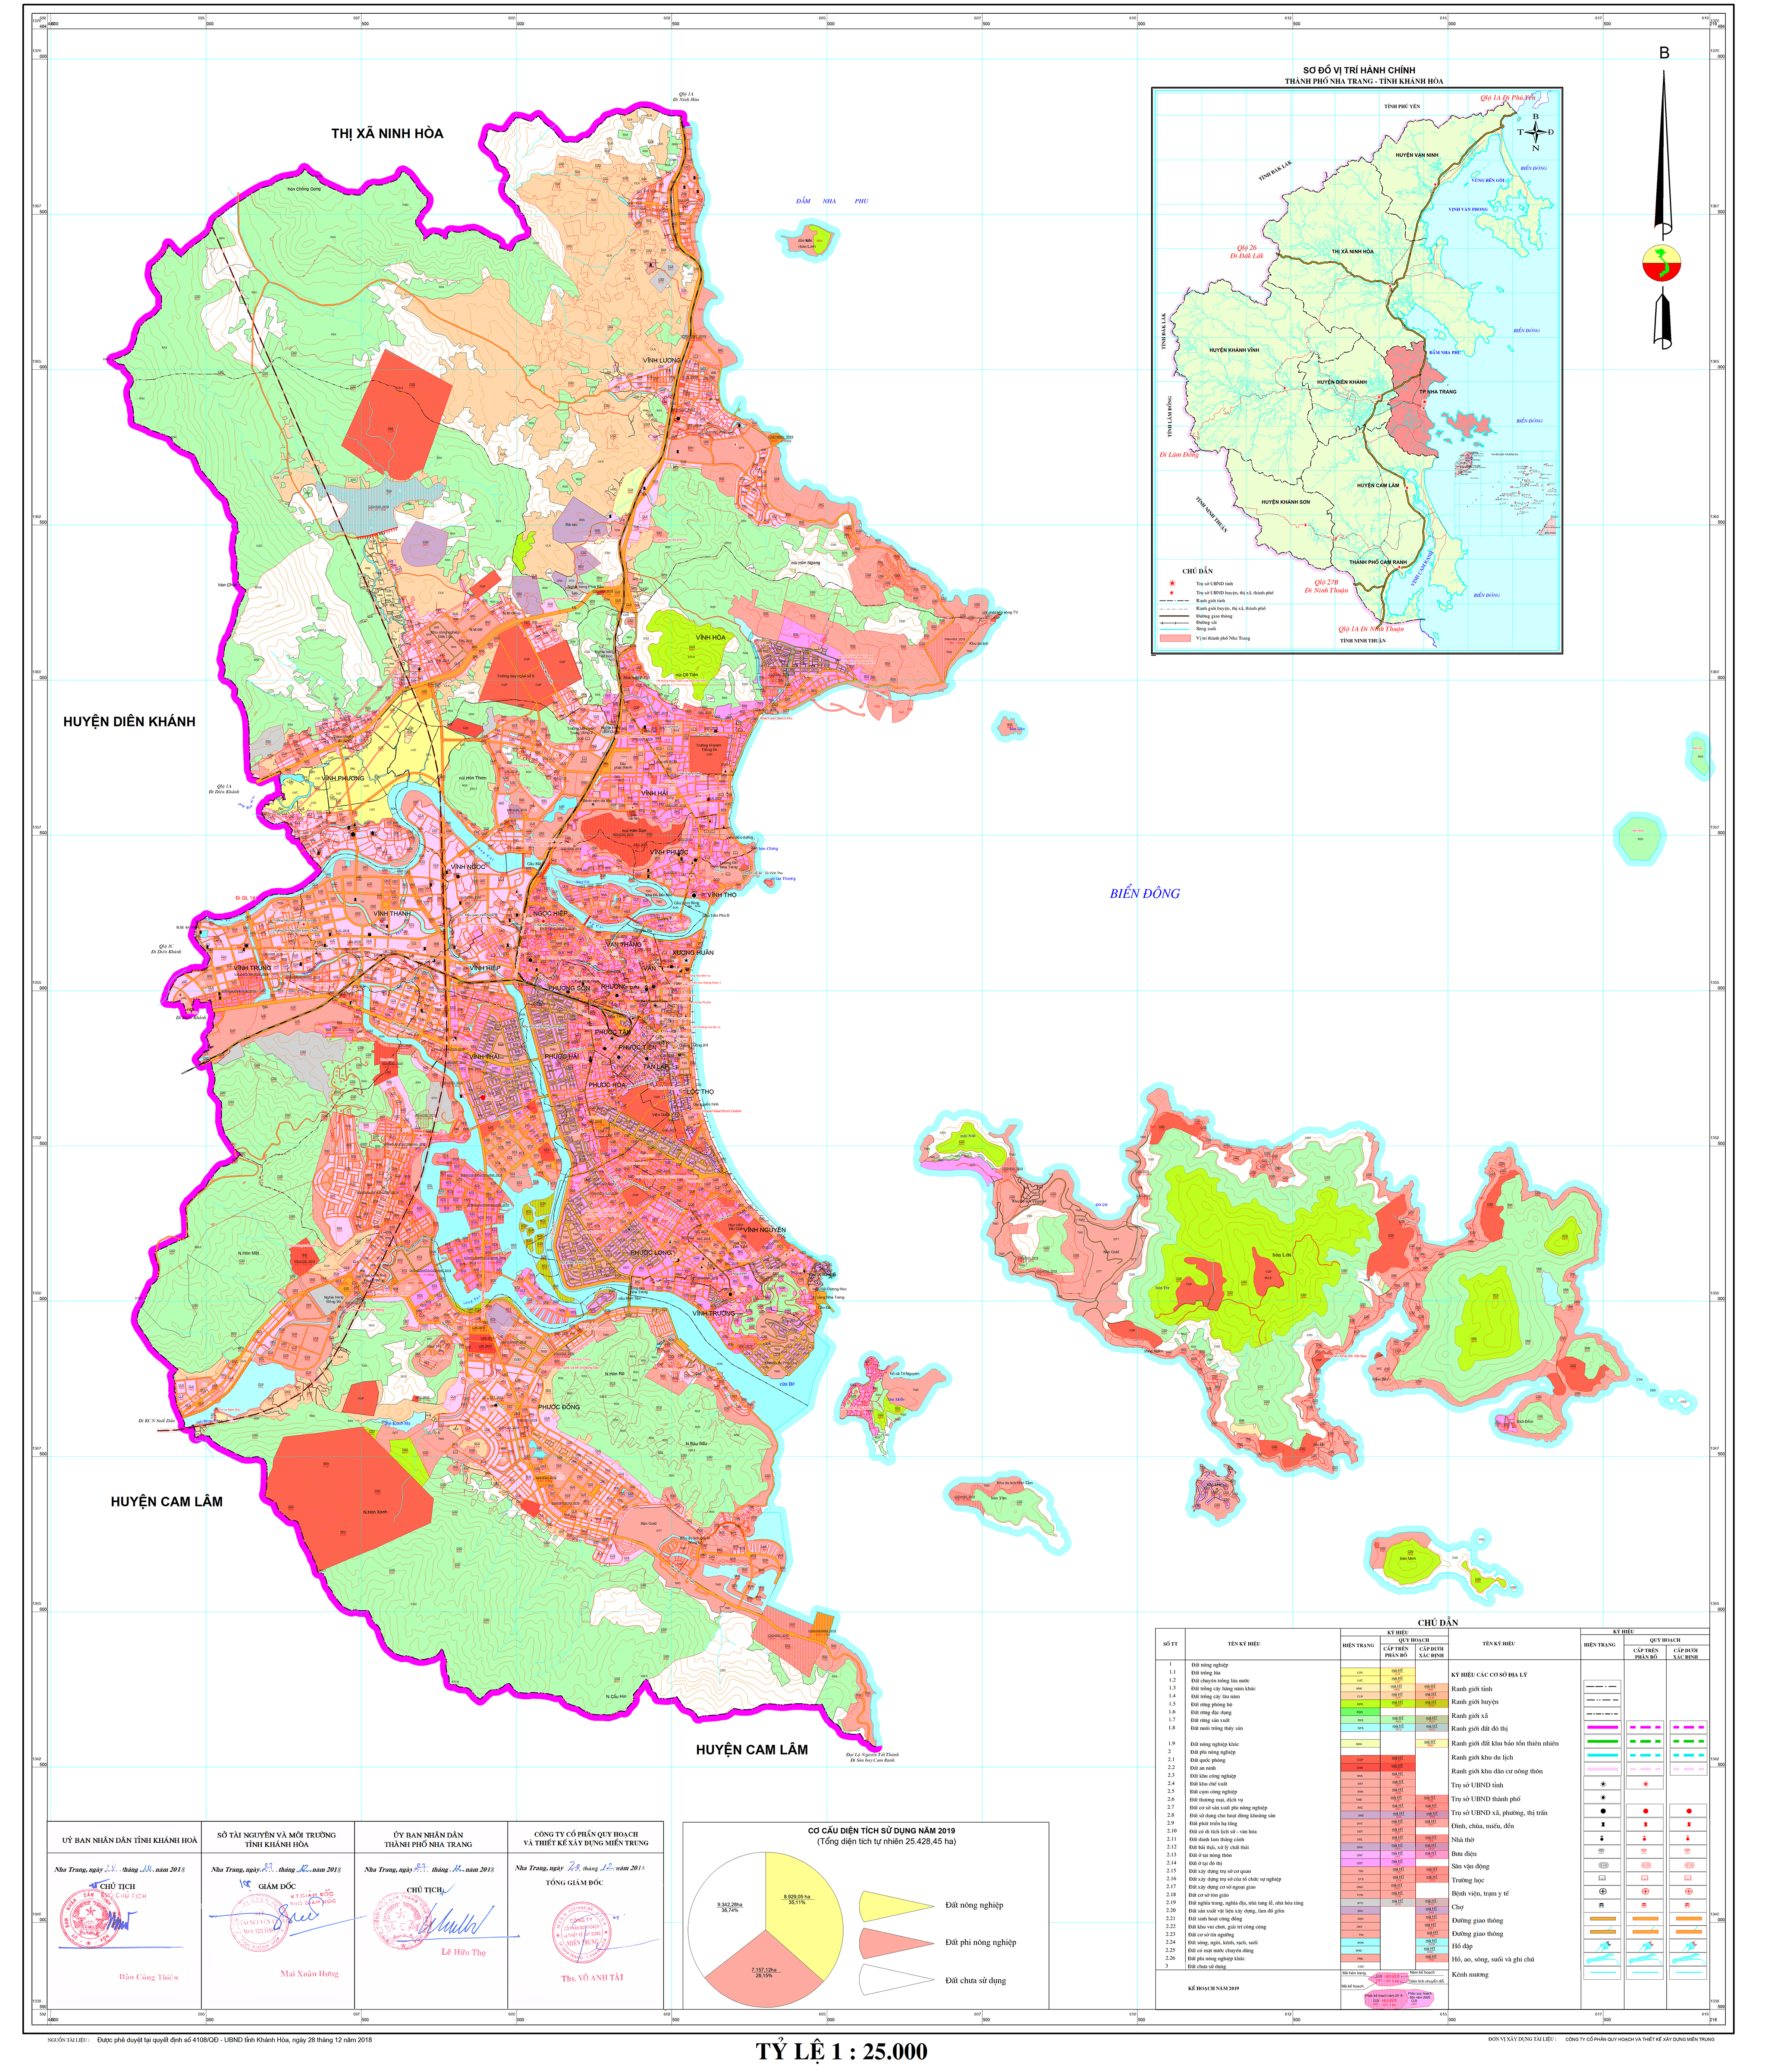 Muốn hình dung rõ hơn về Khánh Hòa, bạn nên xem bản đồ hành chính Khánh Hòa khổ lớn